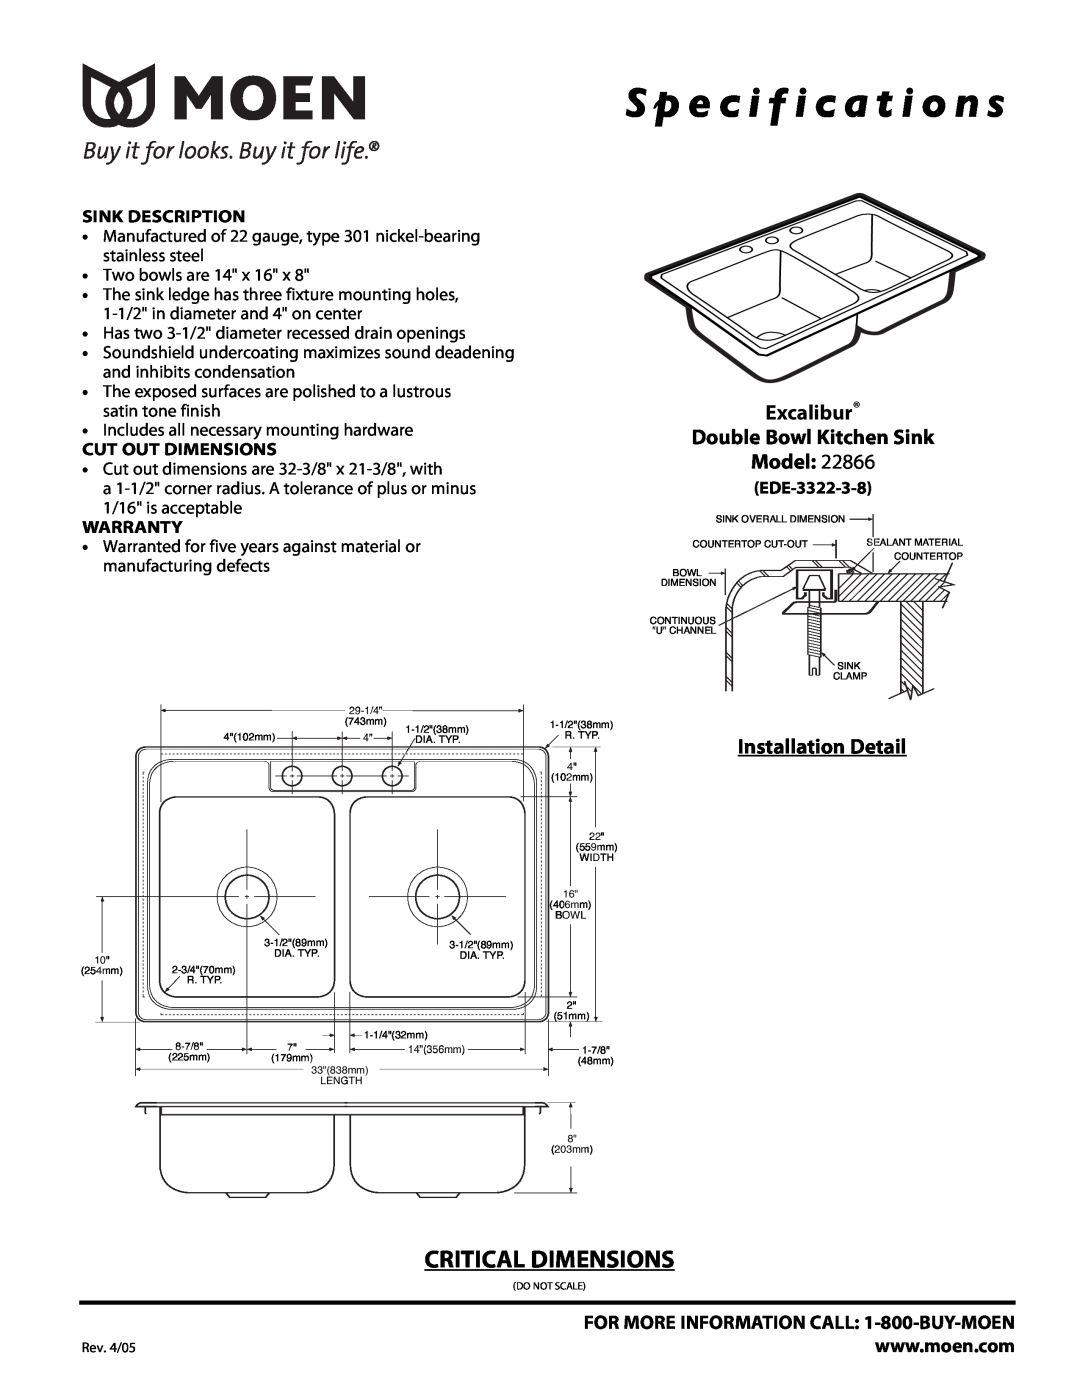 Moen 22866 specifications S p e c i f i c a t i o n s, Critical Dimensions, Excalibur Double Bowl Kitchen Sink Model 